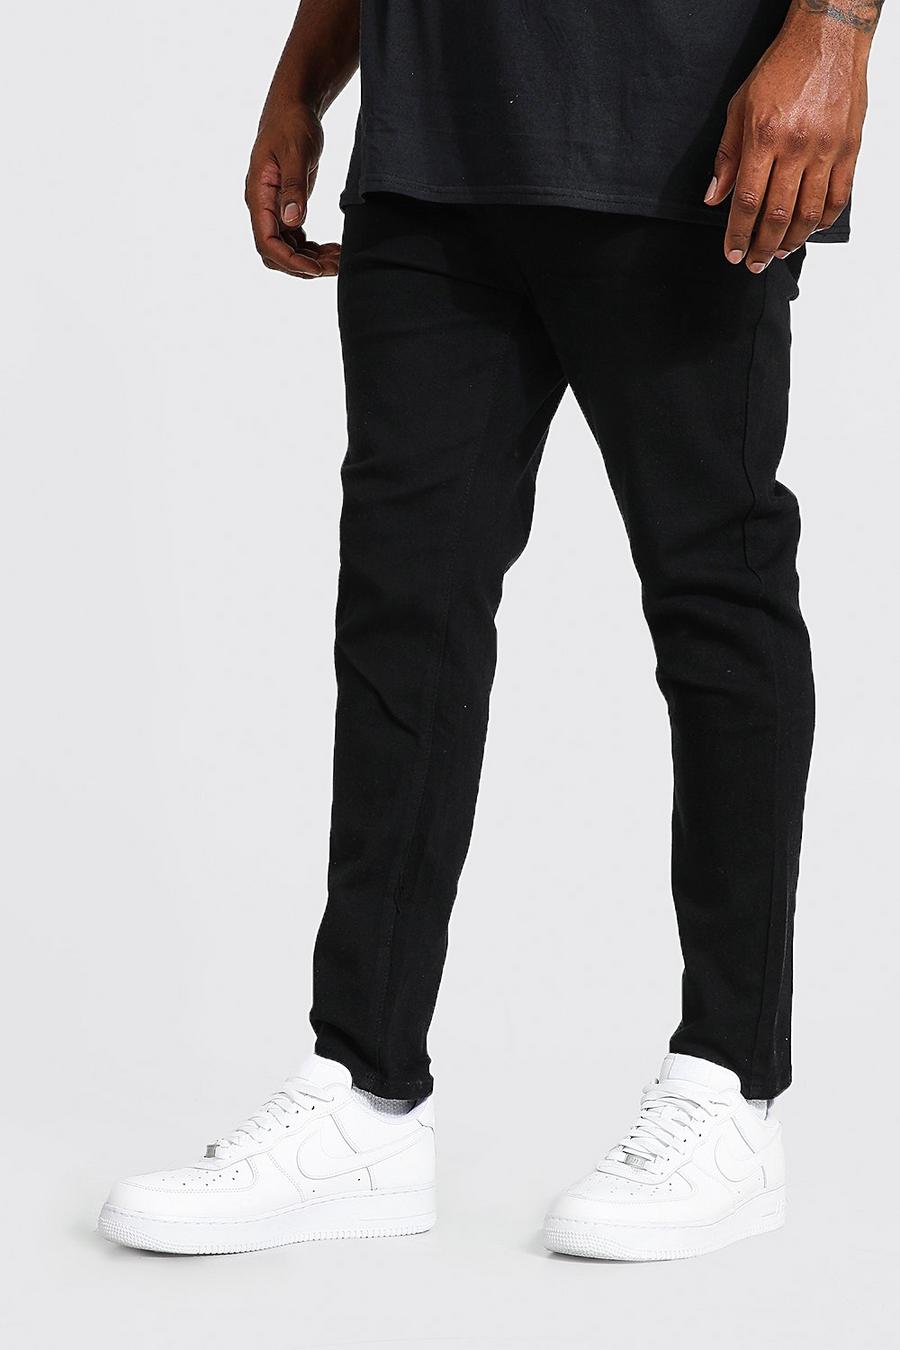 שחור סקיני ג'ינס לגברים גדולים וגבוהים image number 1